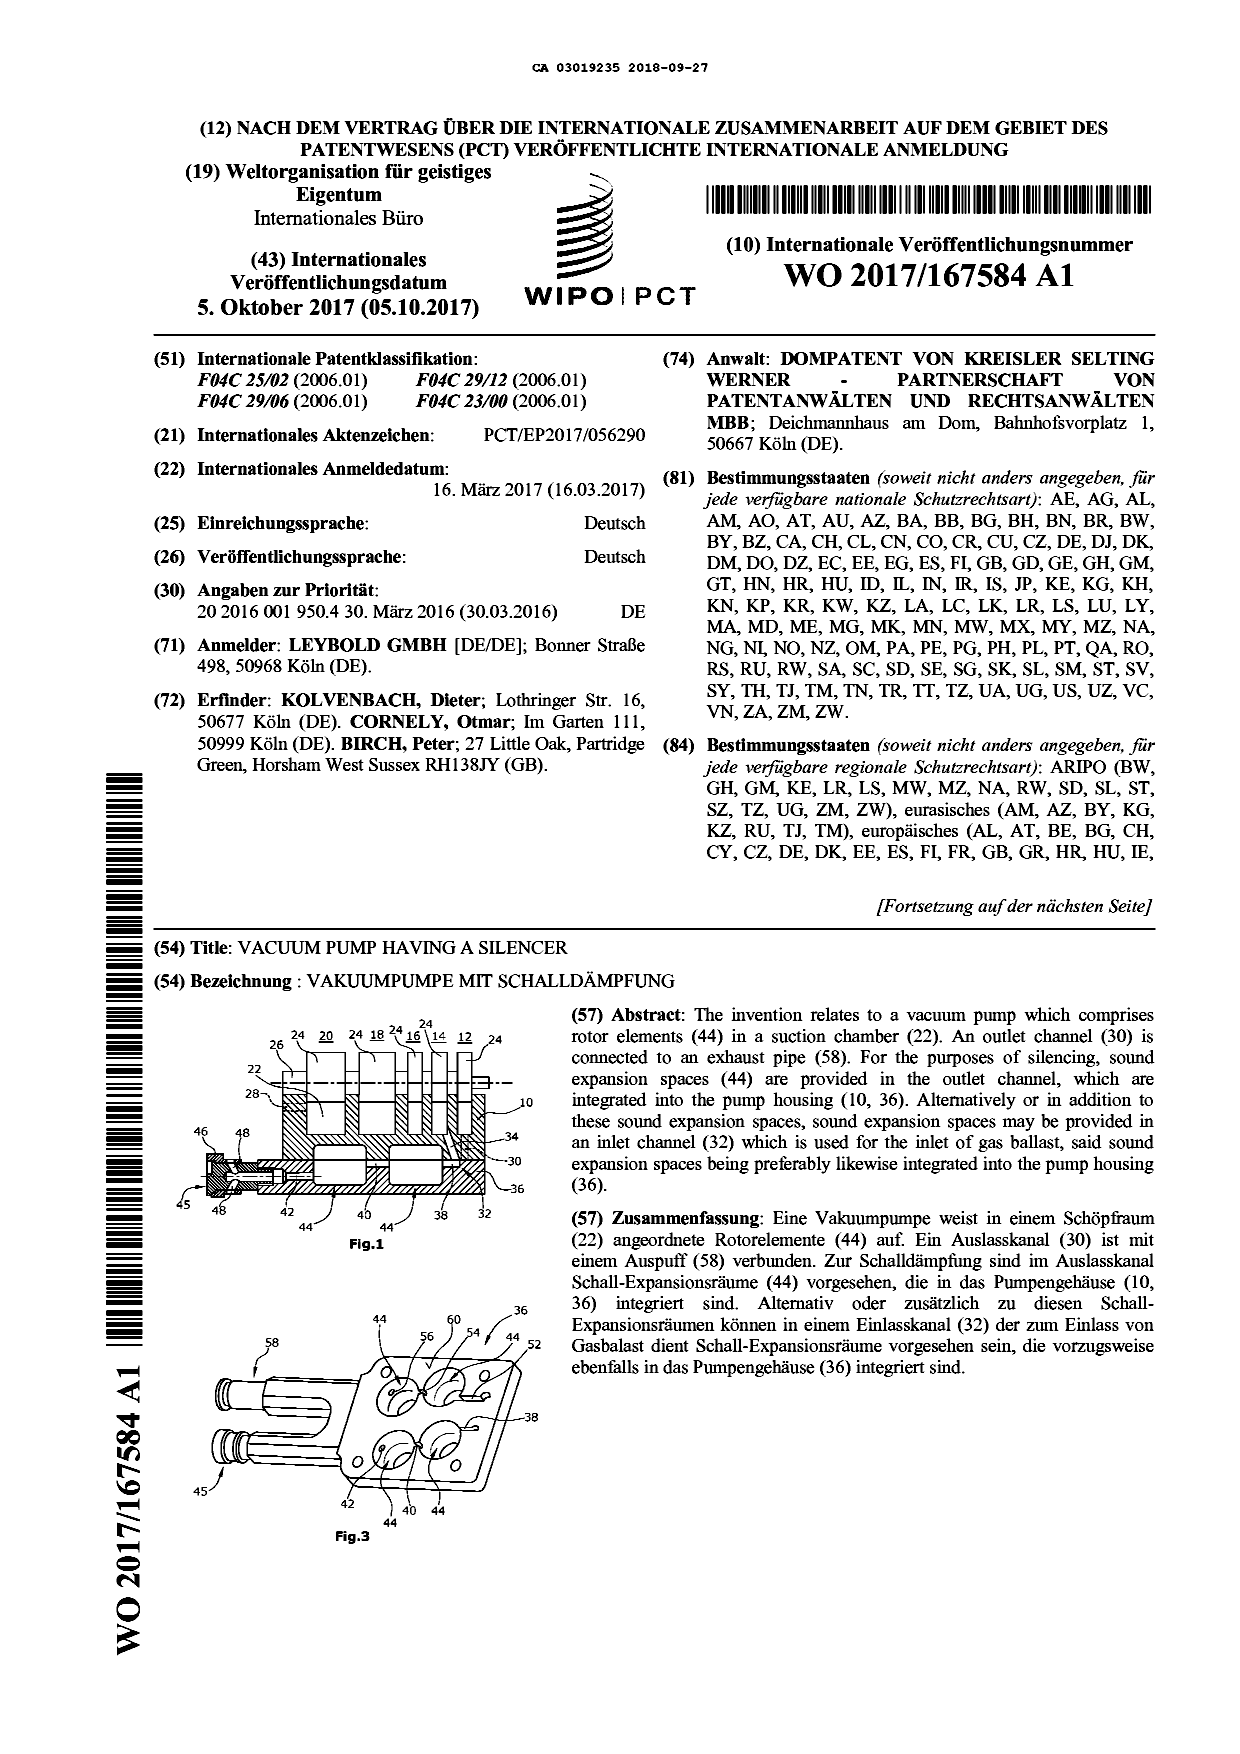 Document de brevet canadien 3019235. Modification - Abrégé 20171227. Image 1 de 2